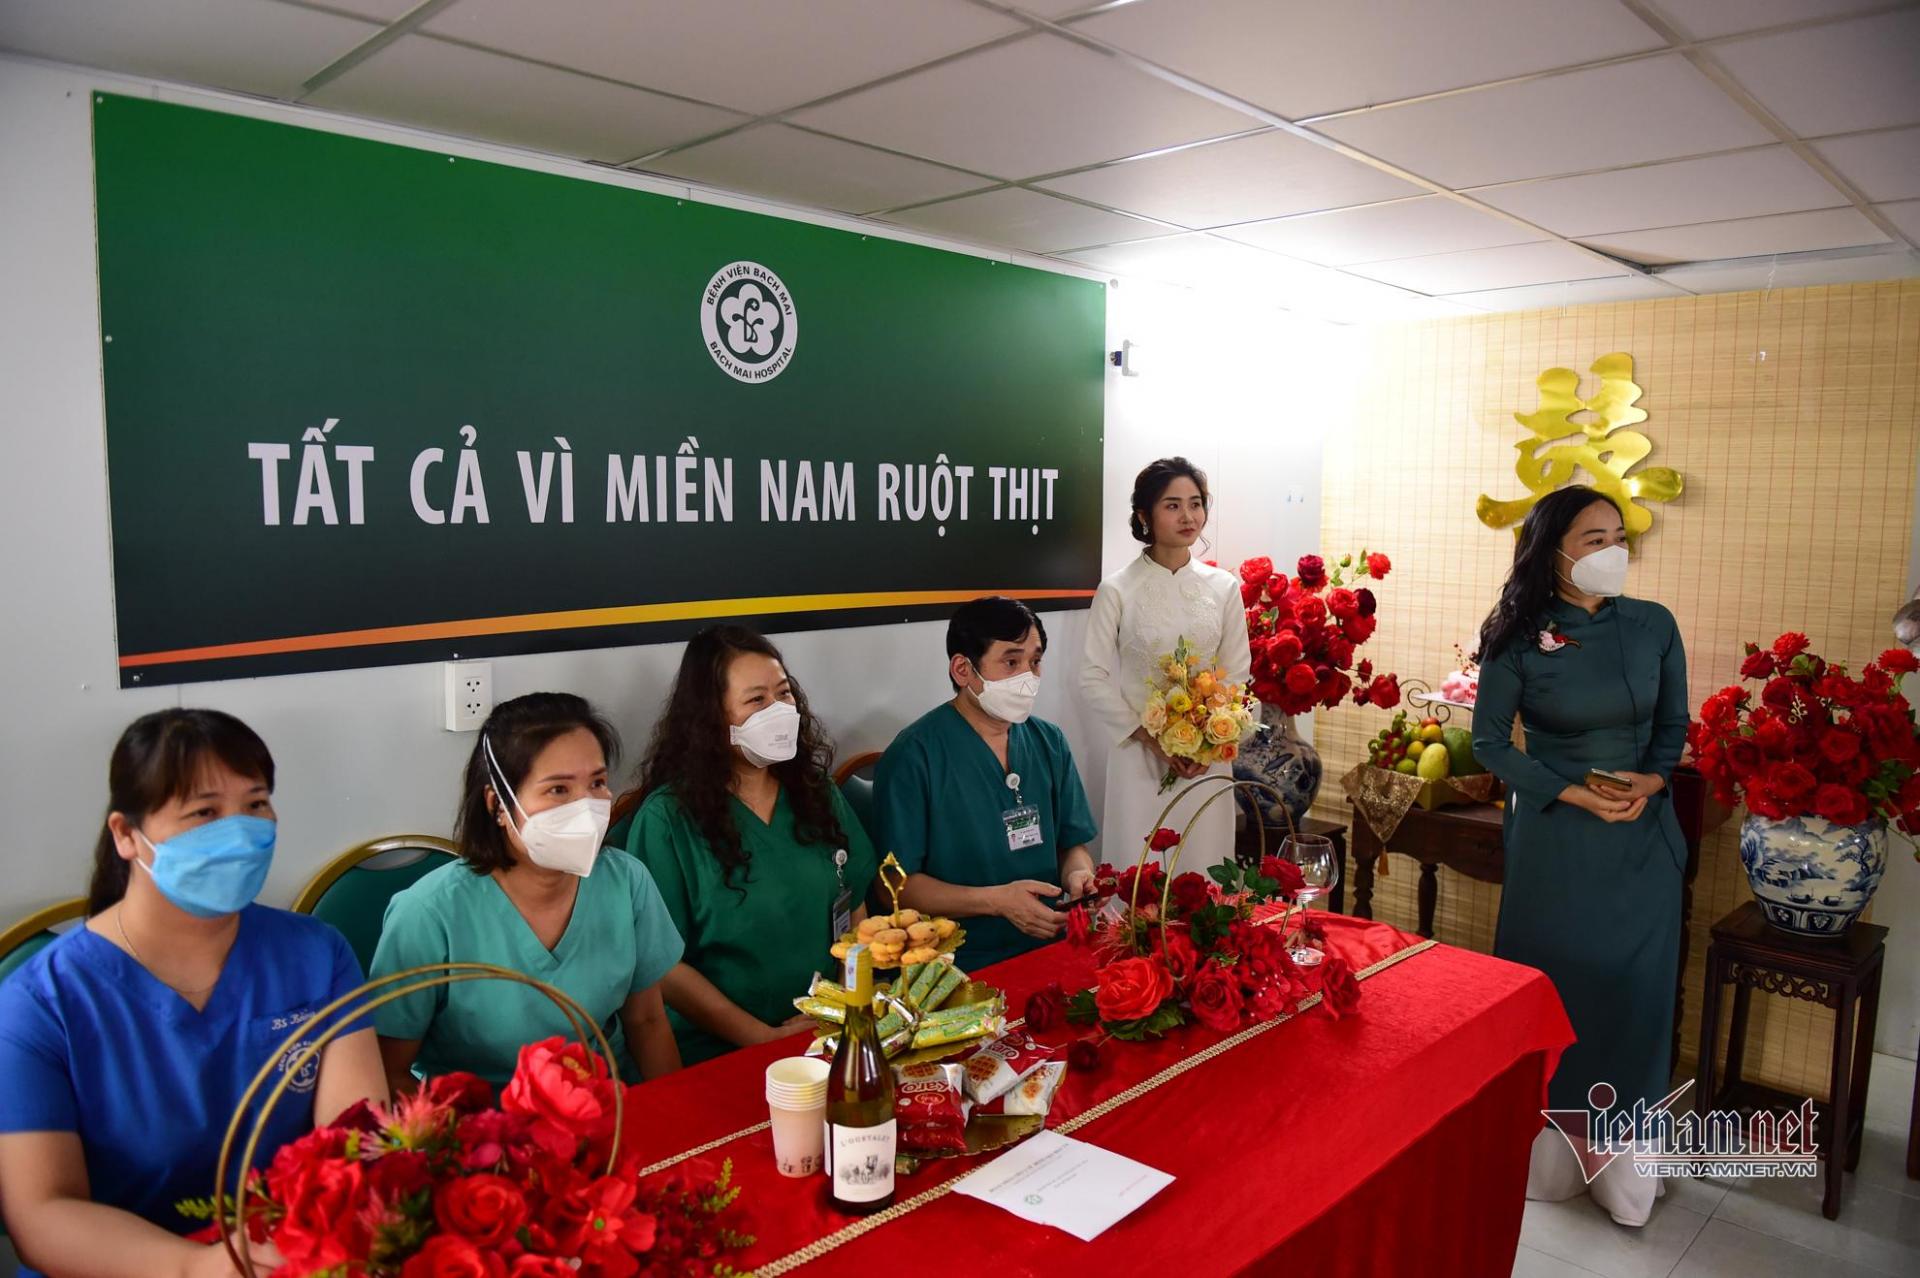 Đội ngũ y bác sĩ bệnh viện Bạch Mai đại diện nhà gái tham dự đám cưới cô dâu Ngọc Diệp ở TP.HCM